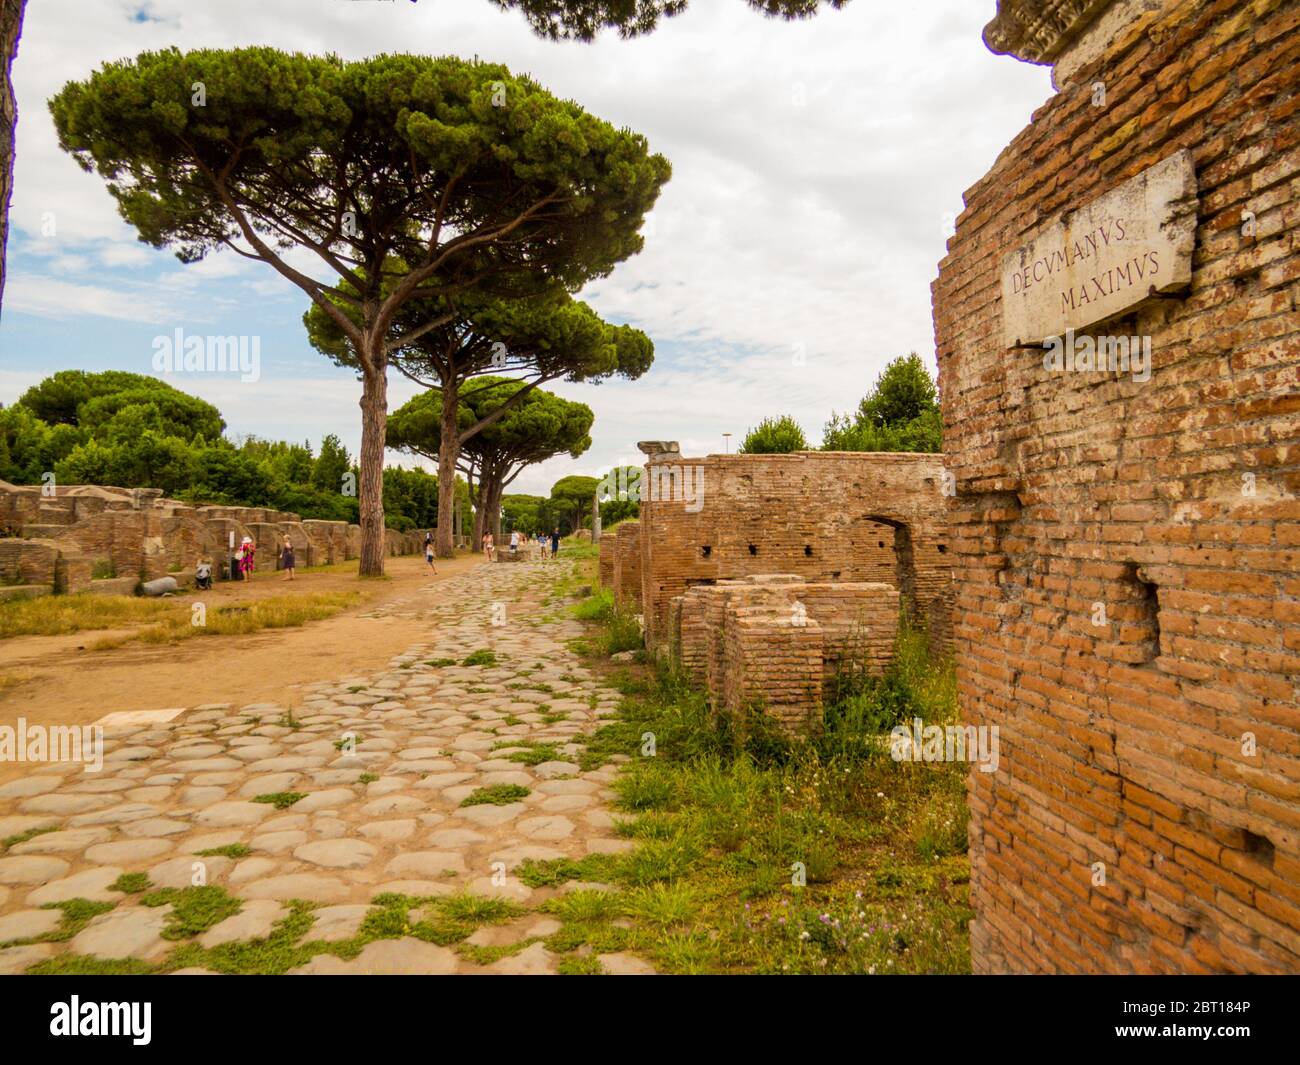 Ostia Antica, Italia - 12 luglio 2019: Veduta del Decumano massimo nell'antico sito archeologico romano di Ostia Antica, vicino a Roma. Foto Stock